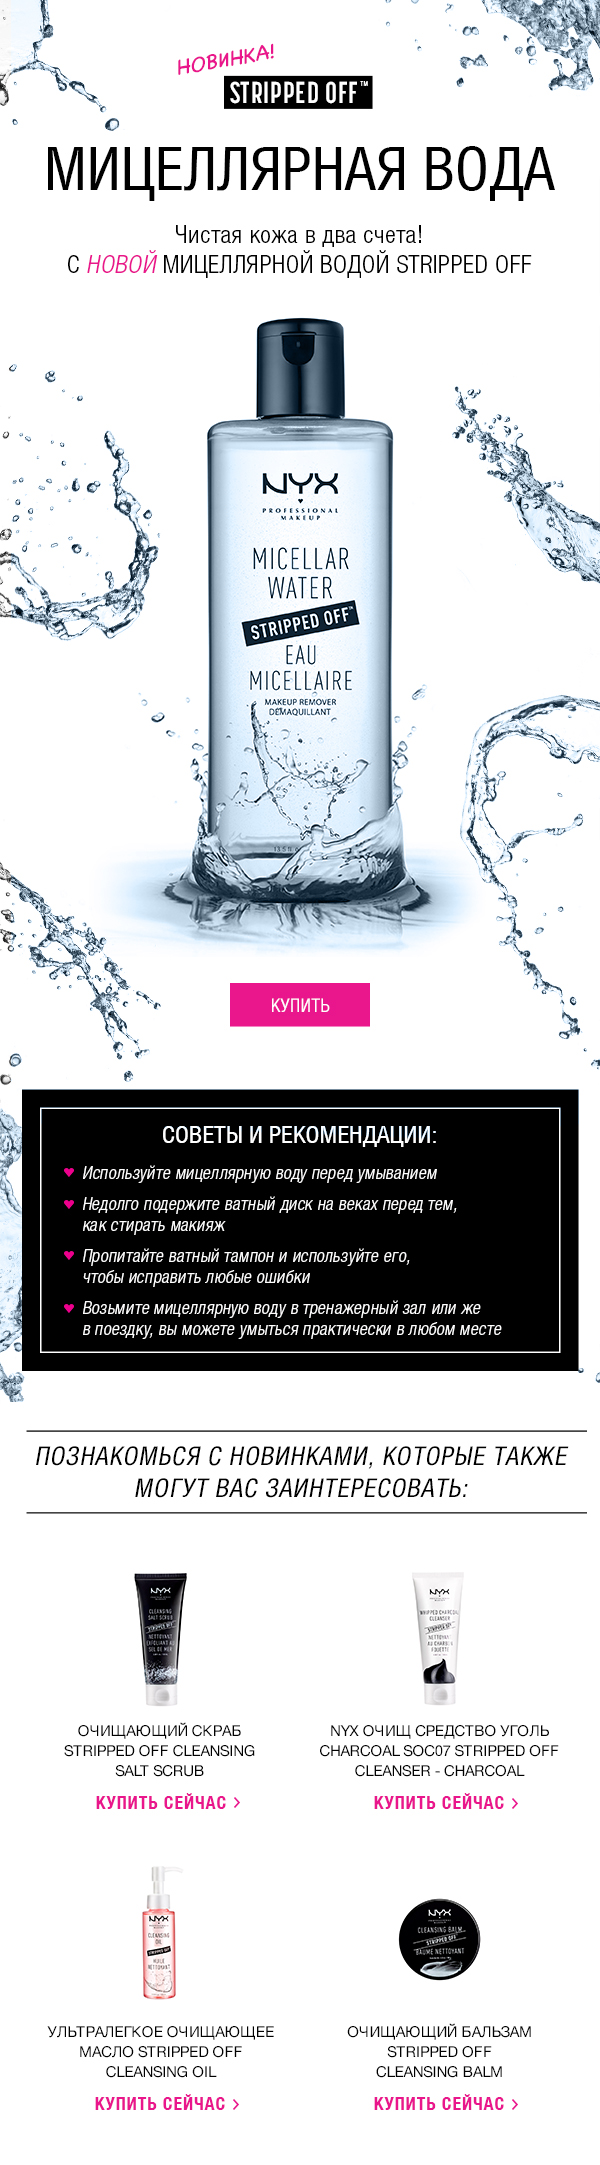 Мицеллярная вода - чистая кожа в два счета от NYX!